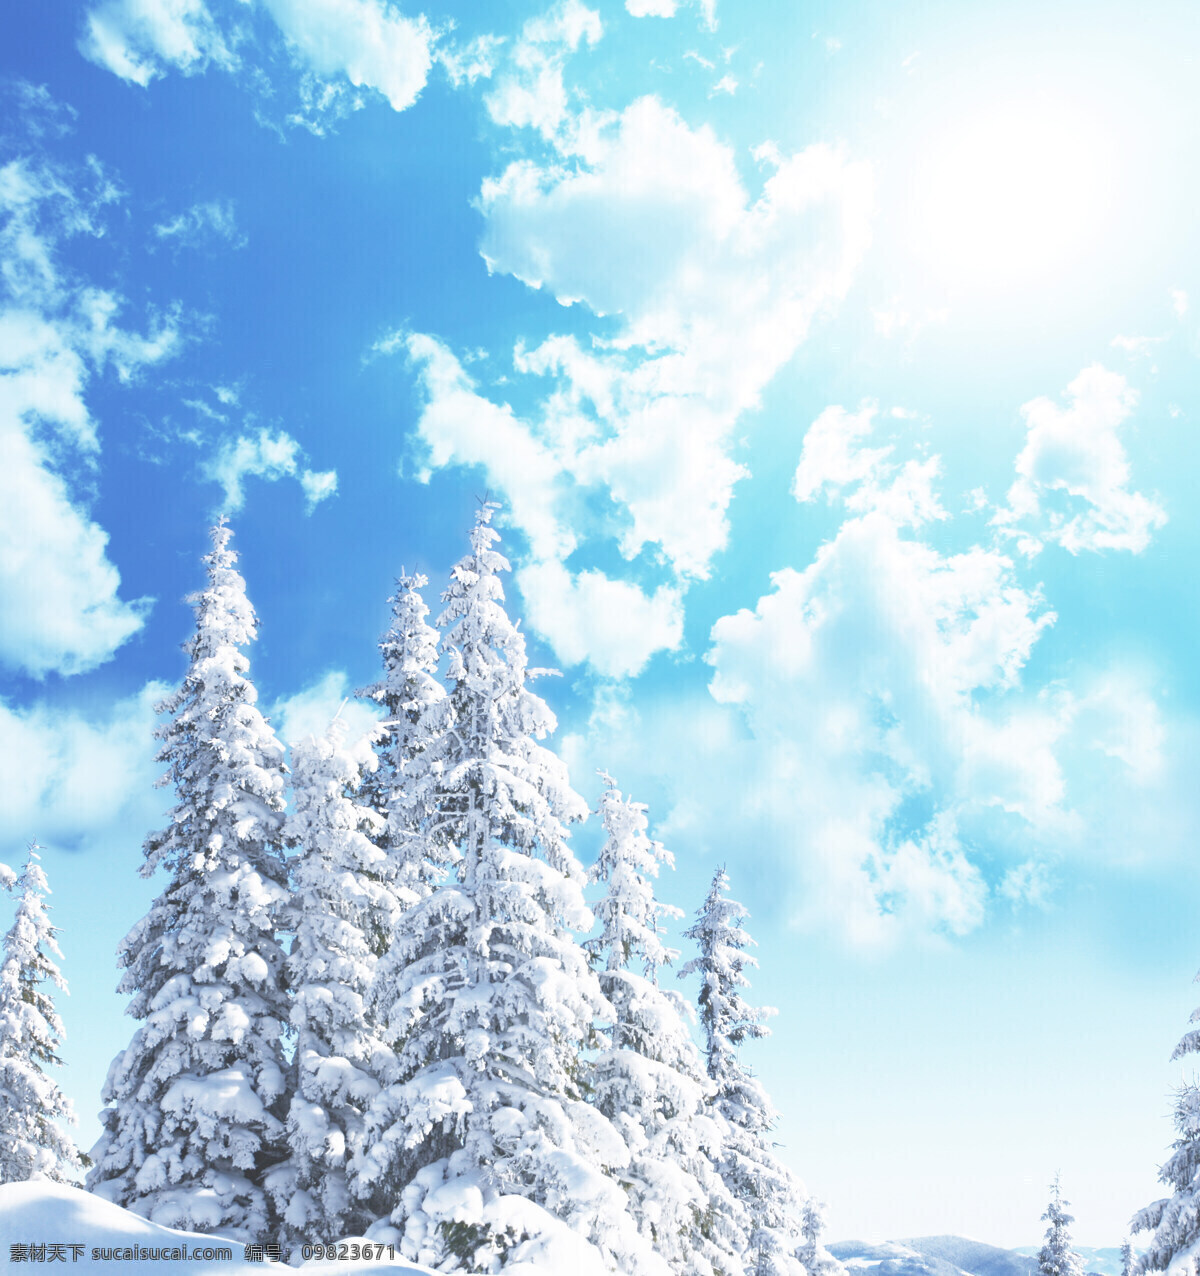 蓝天白云雪松 蓝天 白云 雪松 雪天 下雪 白色树 冠白 雪白 雪 松树 冬天 风景 摄影图片 自然风光 自然景观 自然风景